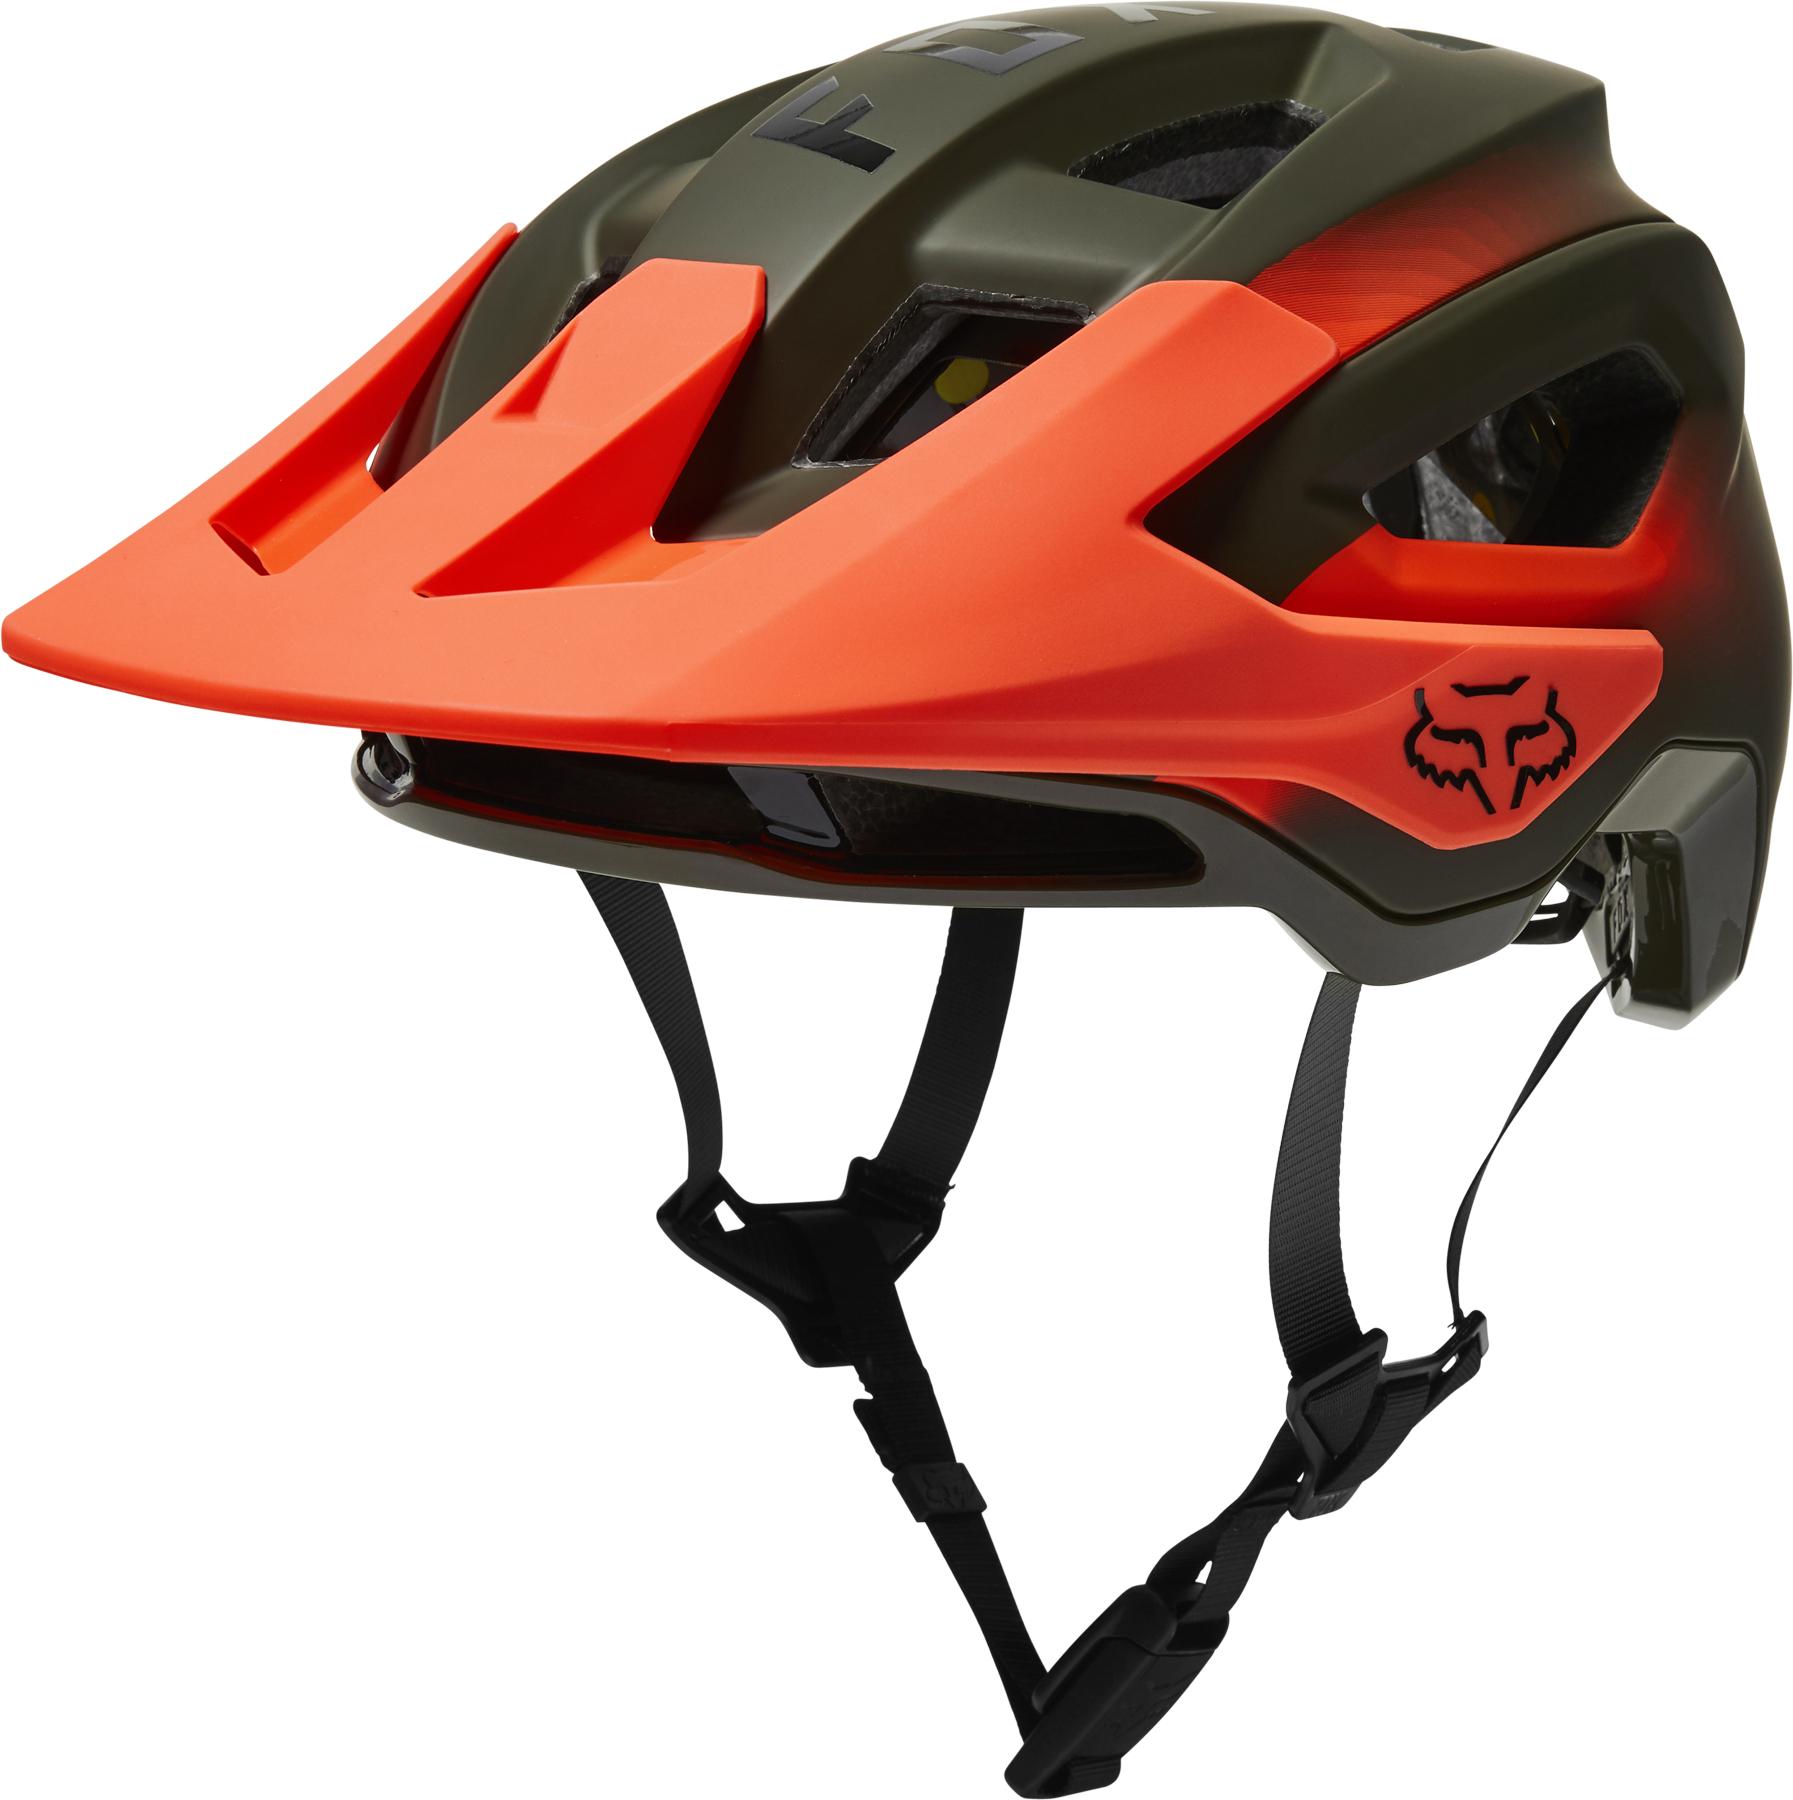 Fox Racing Speedframe Pro Mtb Helmet (mips) - Fade Olive Green